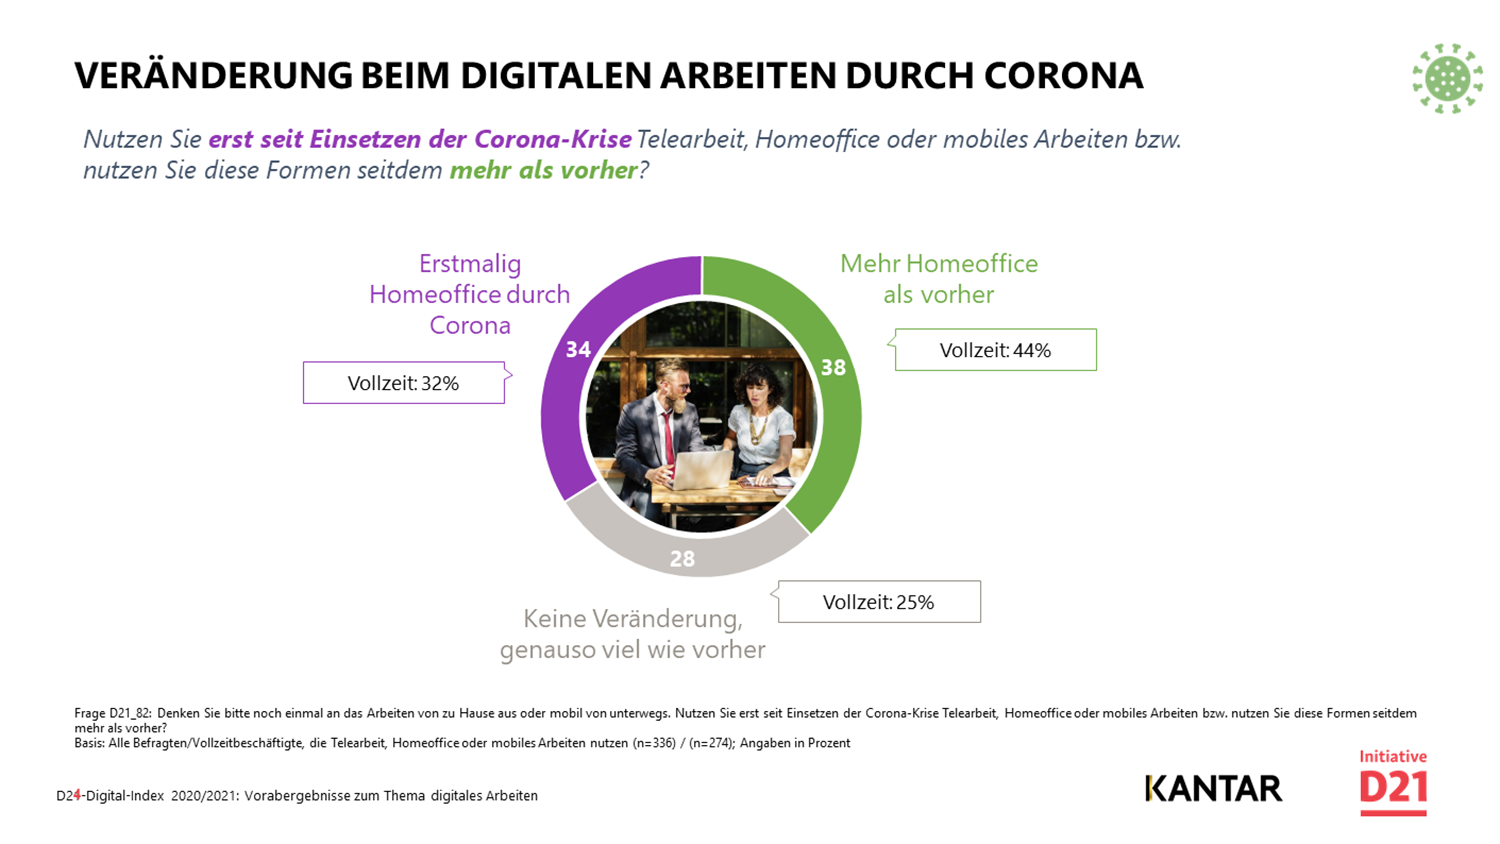 Veränderung beim digitalen Arbeiten durch Corona